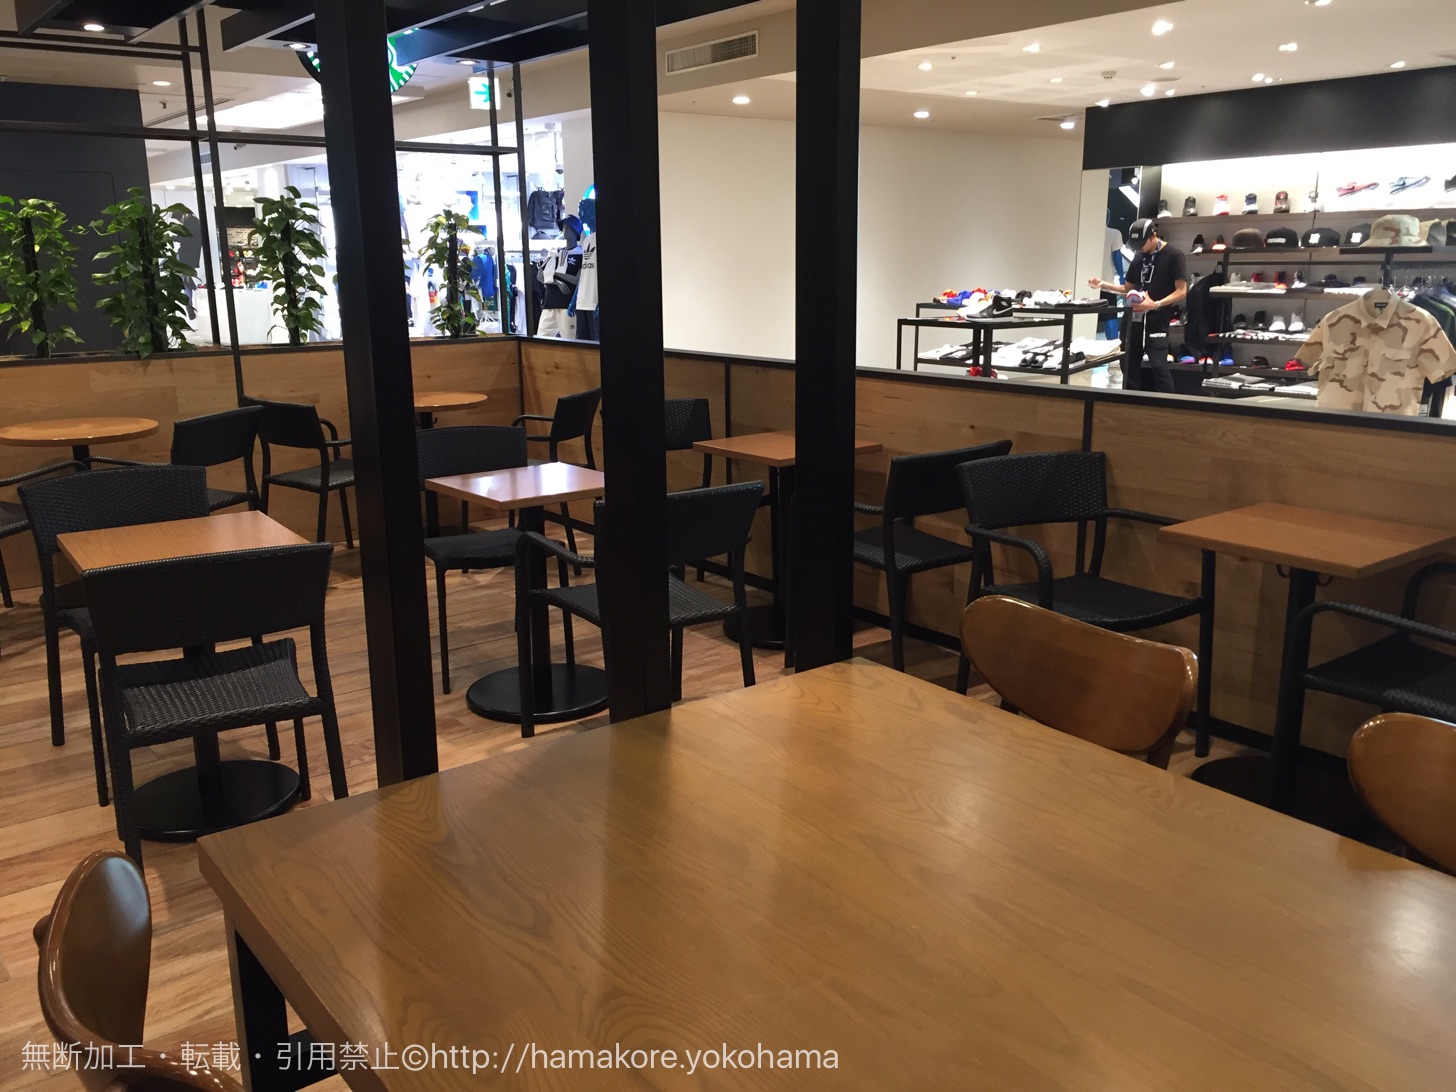 スターバックス 横浜ビブレ店は朝が快適 静かで落ち着ける時間は読書やパソコン作業におすすめ はまこれ横浜